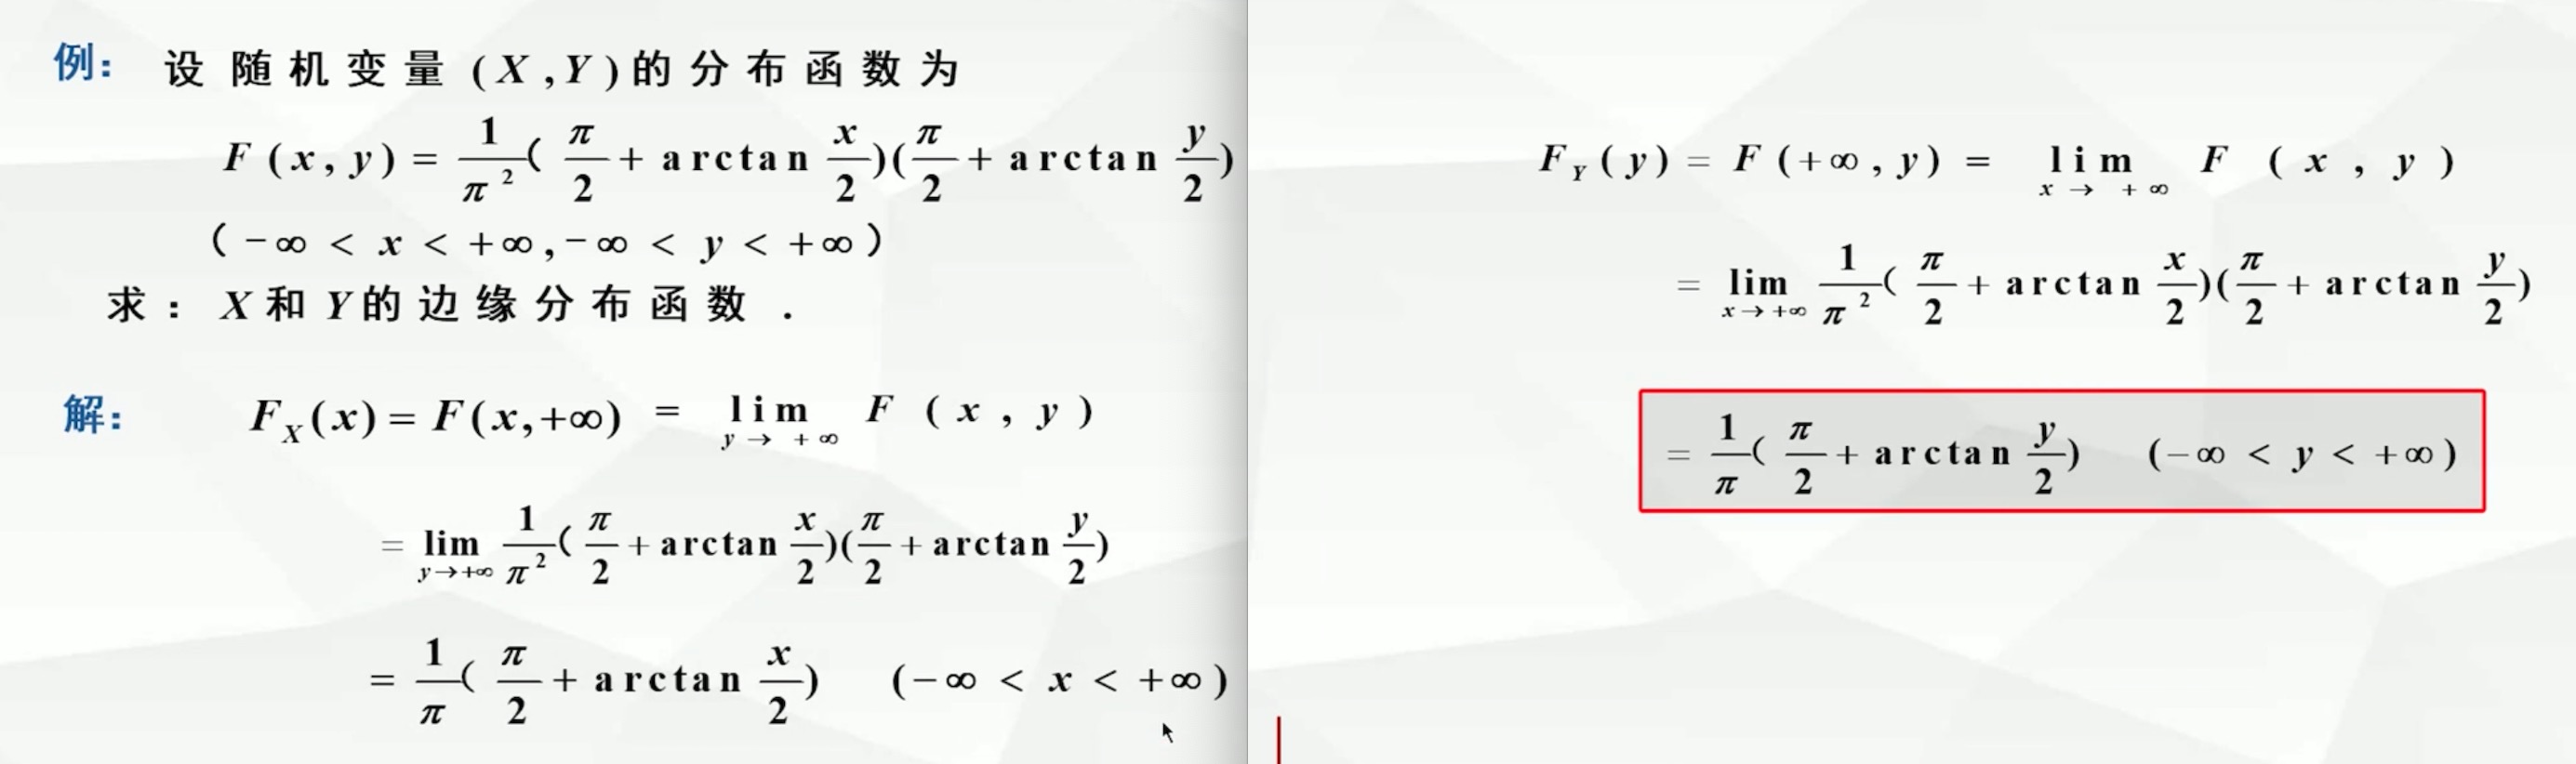 p12-求解边缘分布函数